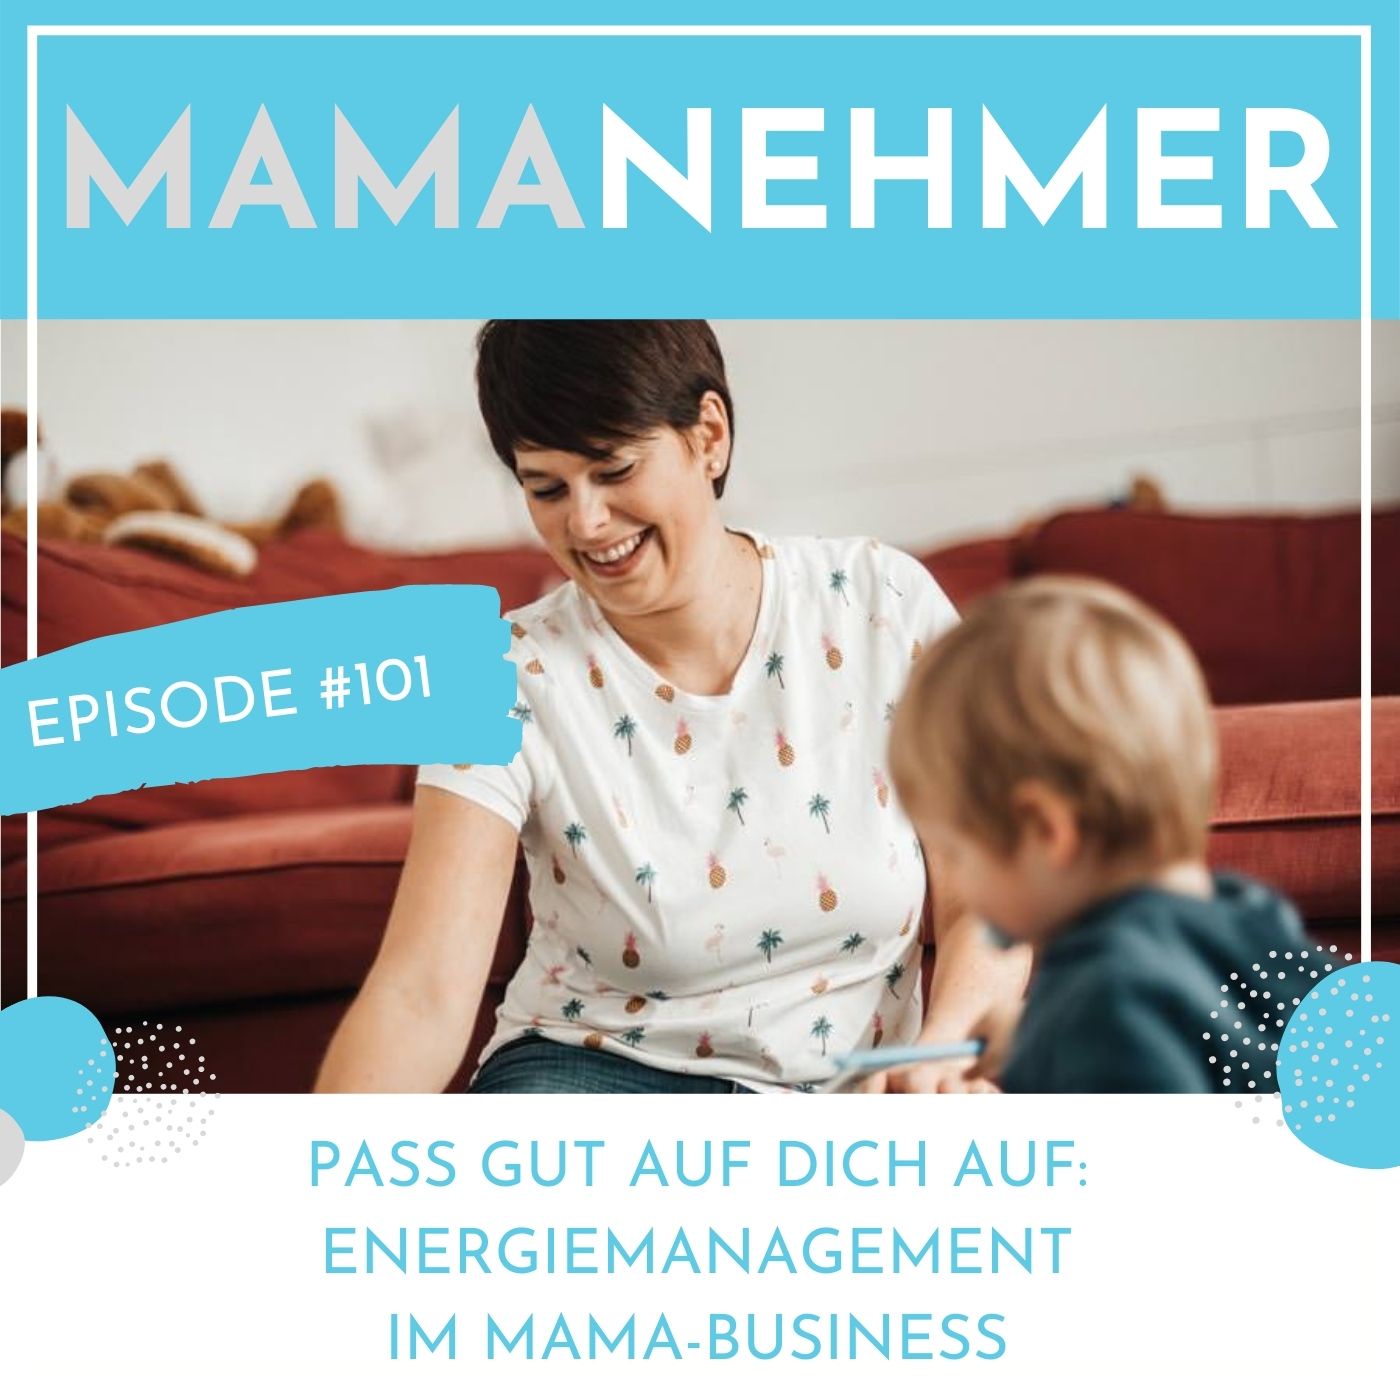 Pass gut auf dich auf – Energiemanagement im Mama-Business